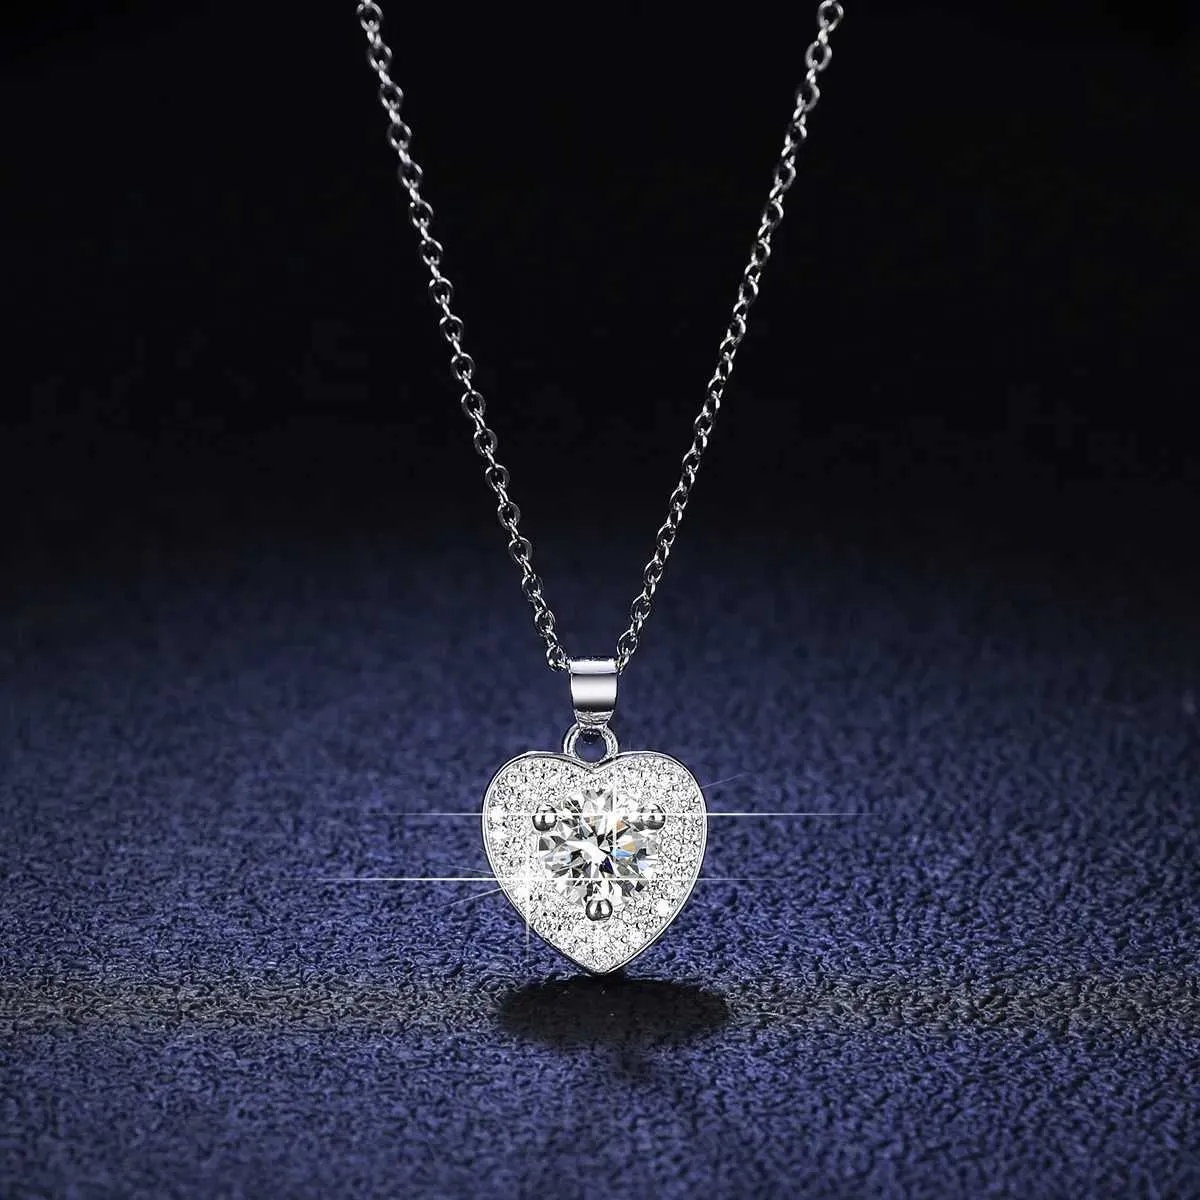 Подвесные ожерелья Hoyon Real Mossanite Ожерелье 925 Серебряное сердце в форме подвесной подвесной фонарная цепь лаборатория фонари для бриллиантовых ювелирных украшений Weddparty J240508